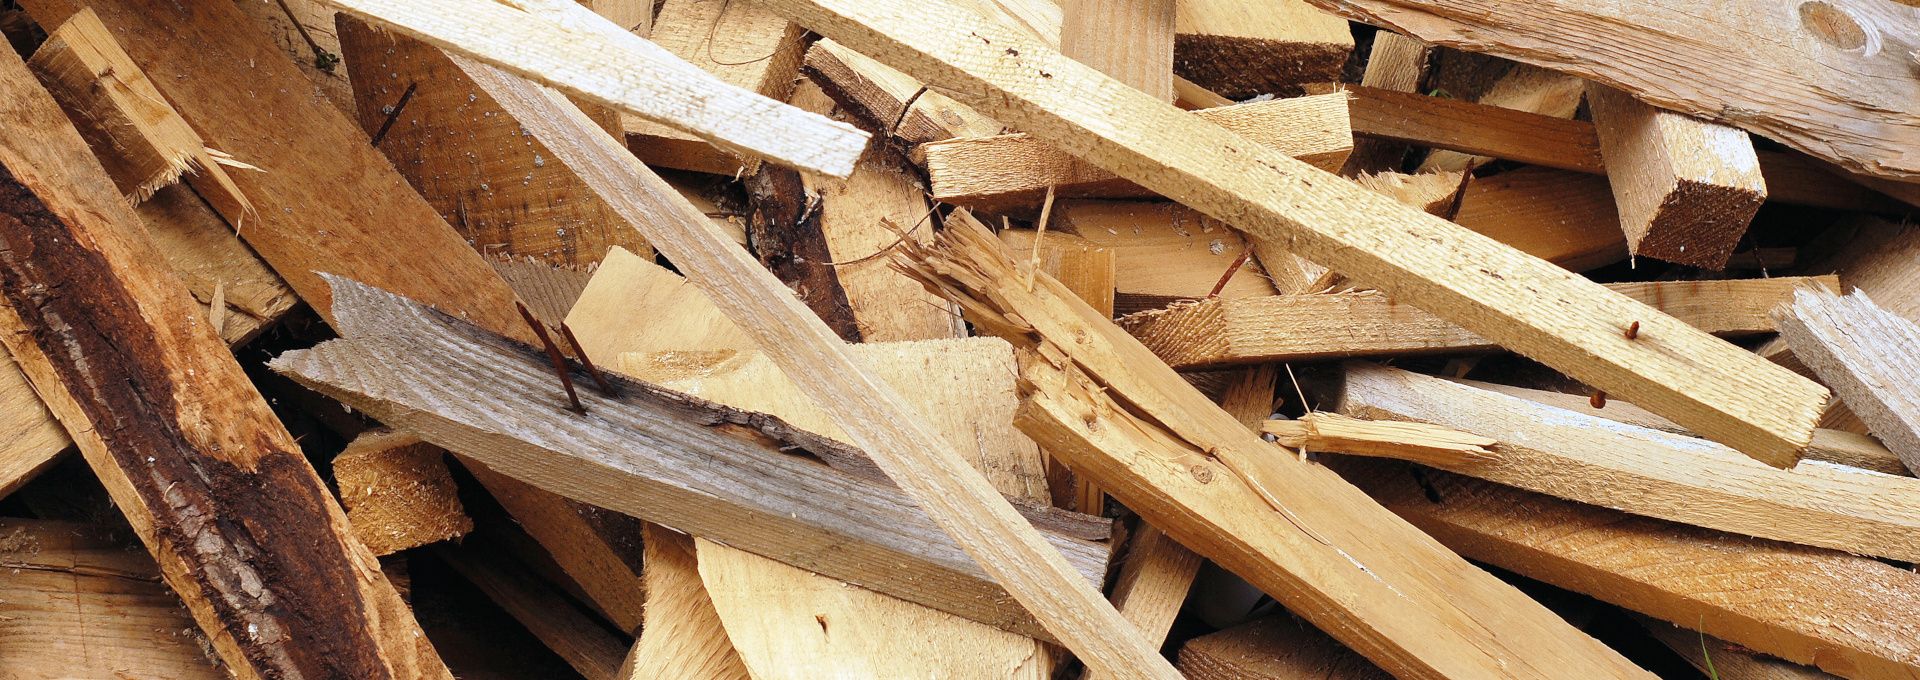 Rifiuti del legno post-consumo - Saviola